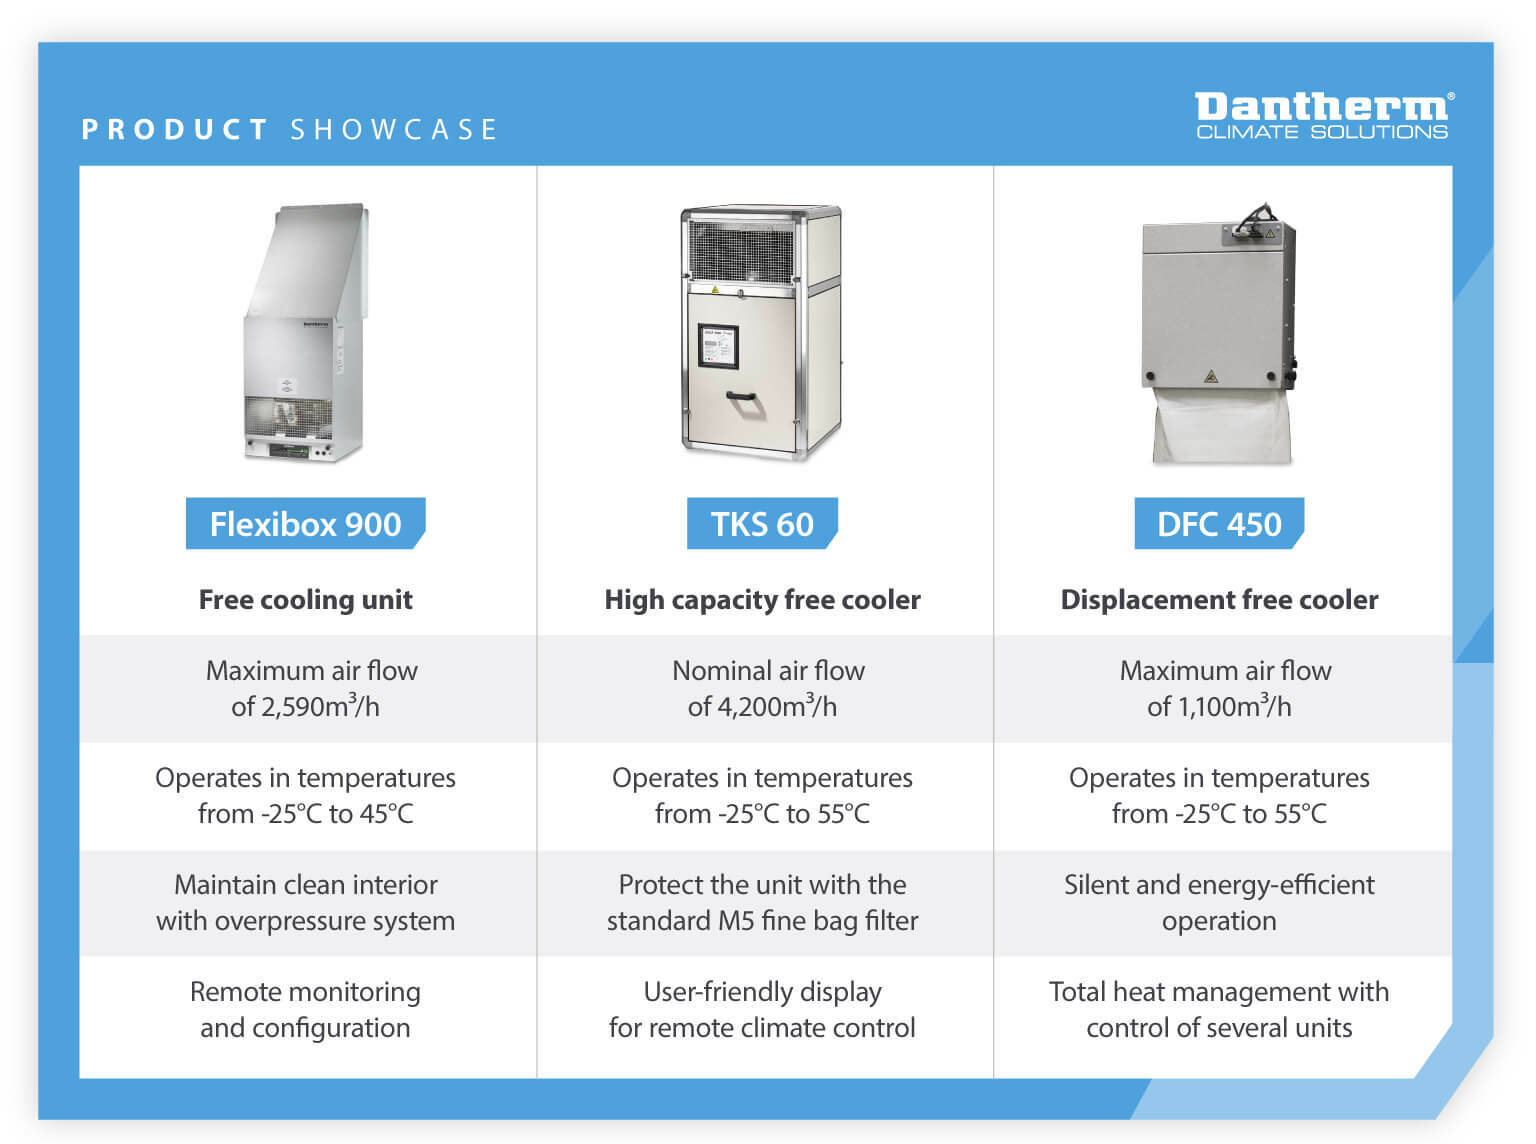 Produktshowcase med sammenligning af egenskaberne ved Dantherms frikølingsenheder, herunder frikølere med høj kapacitet og fortrængningsfrikølere